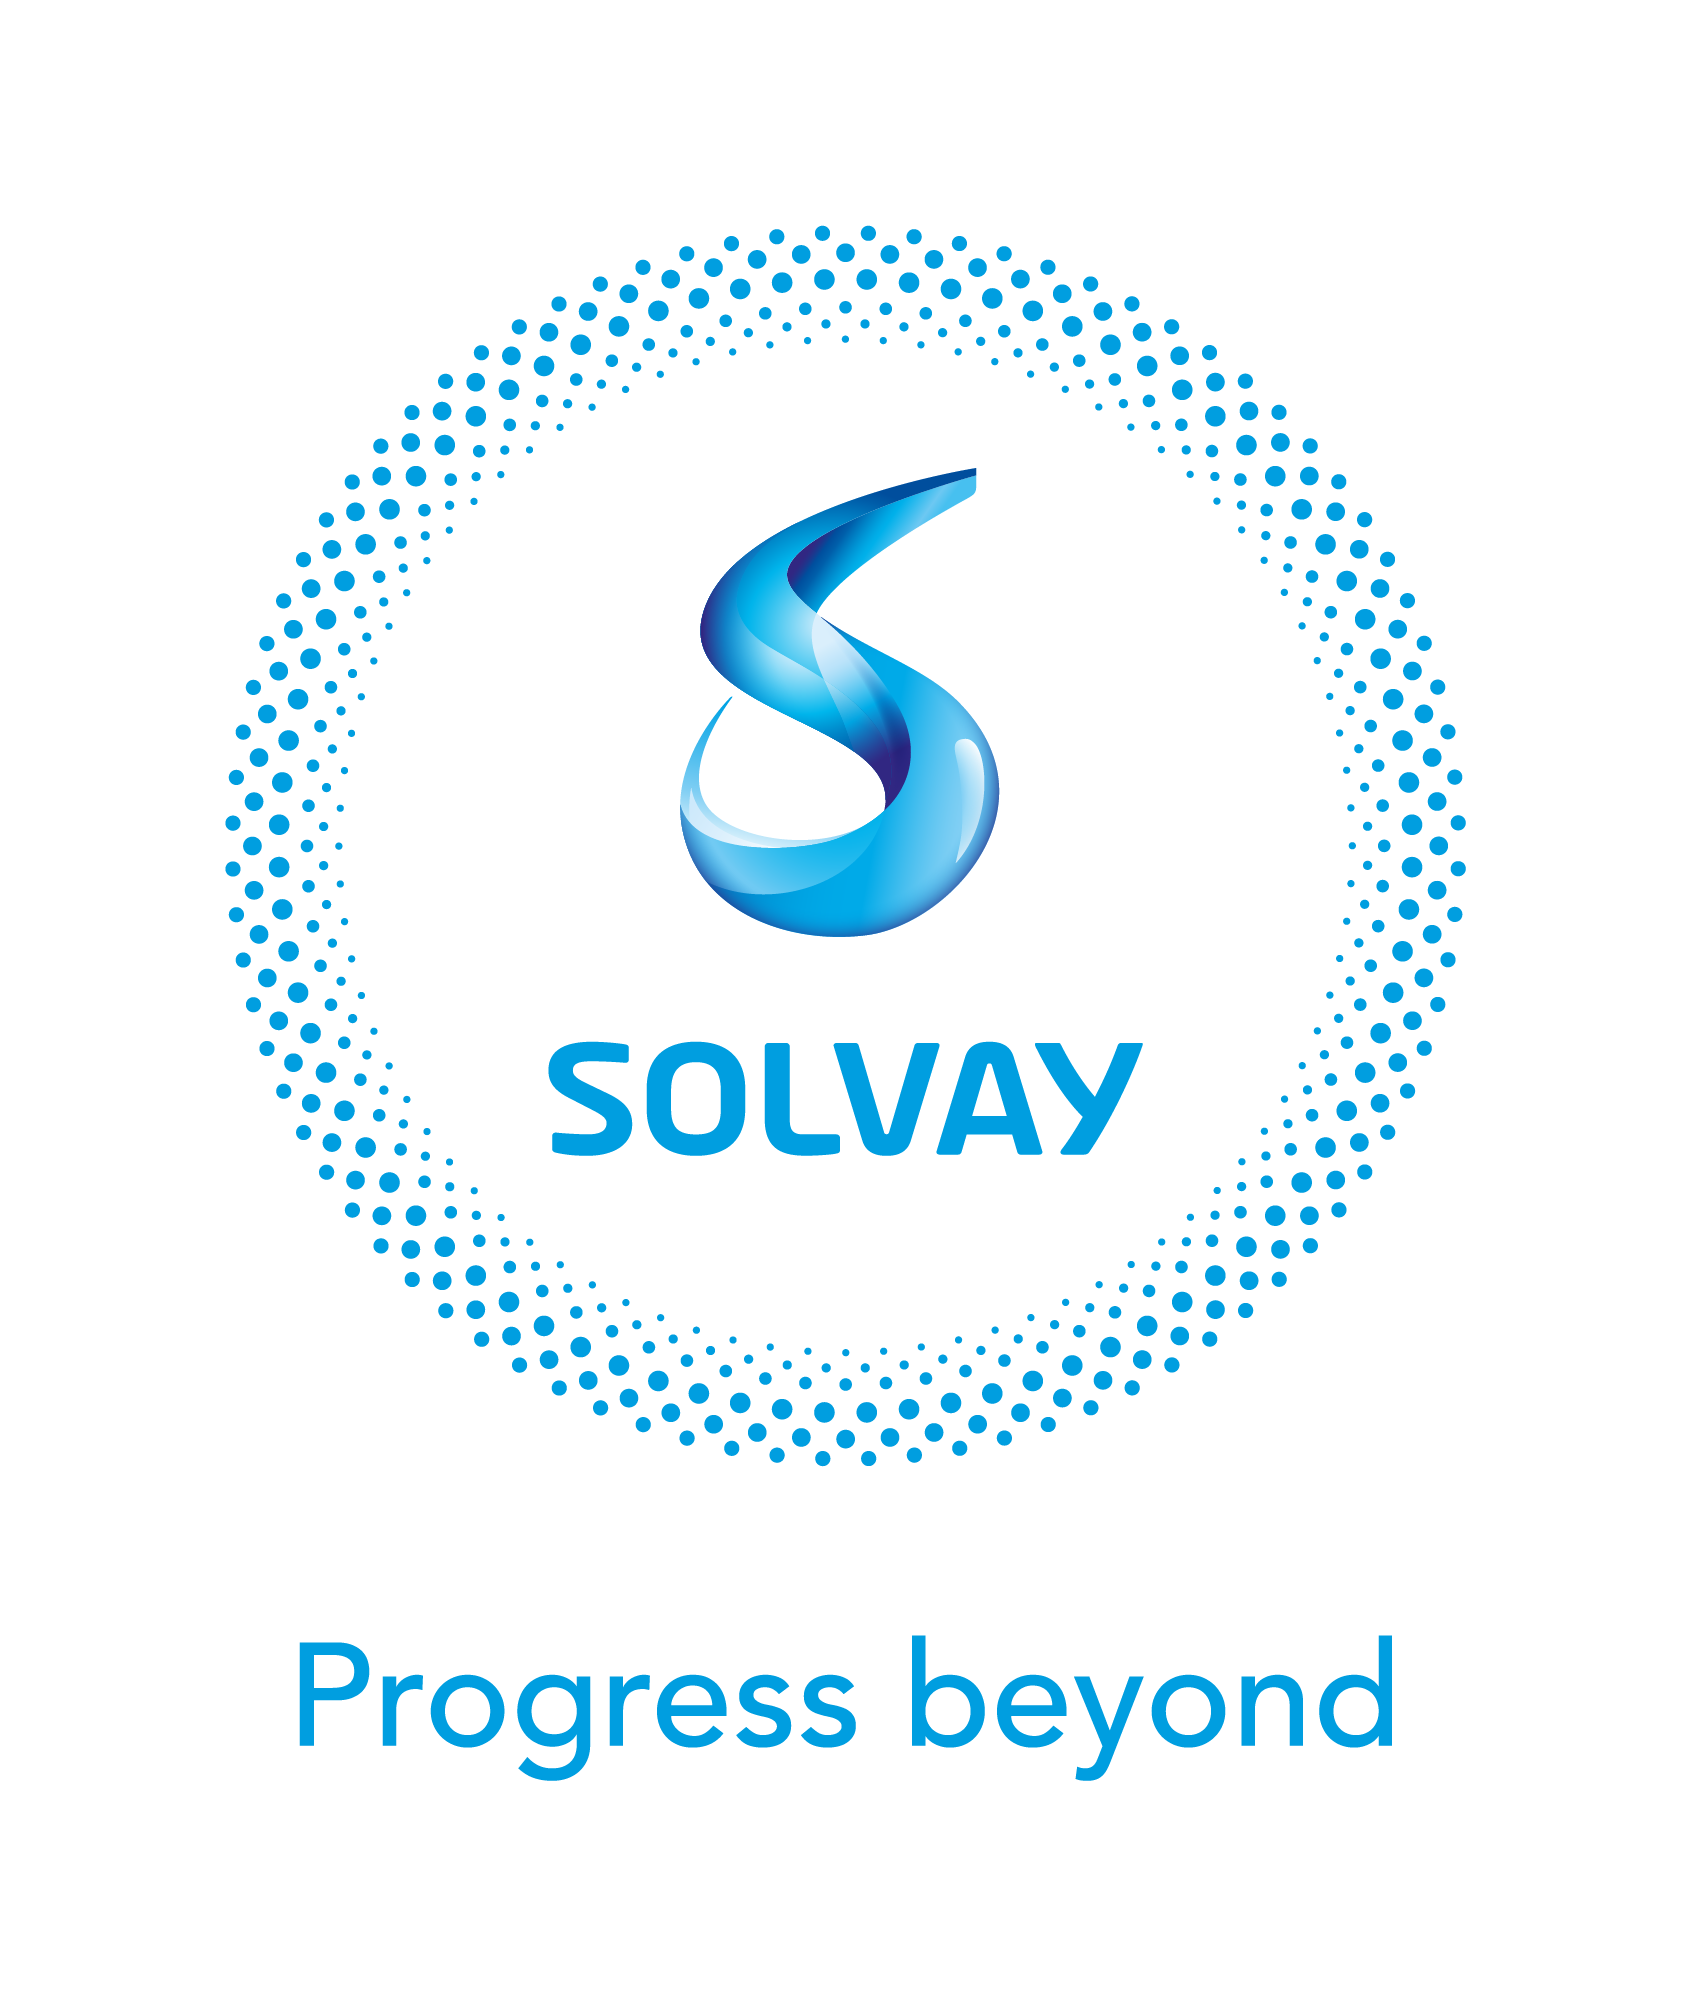 Solvay kondigt een strategische samenwerking aan met Ginkgo